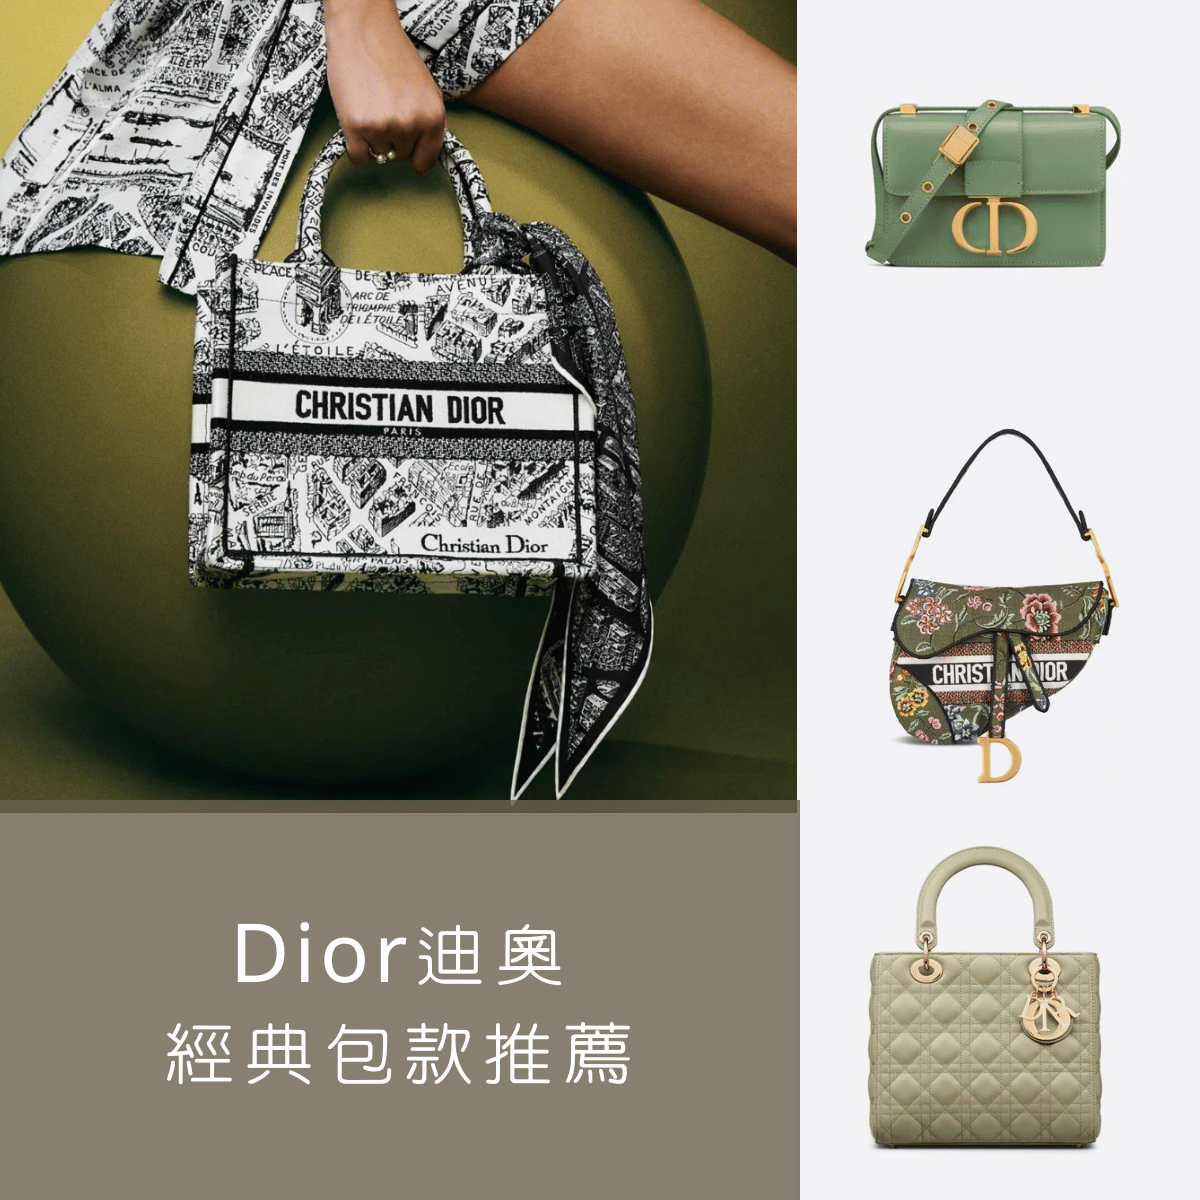 【Dior迪奧經典包款推薦】Lady Dior、30 Montaigne、Saddle、Dior Book Tote、Dior Vibe